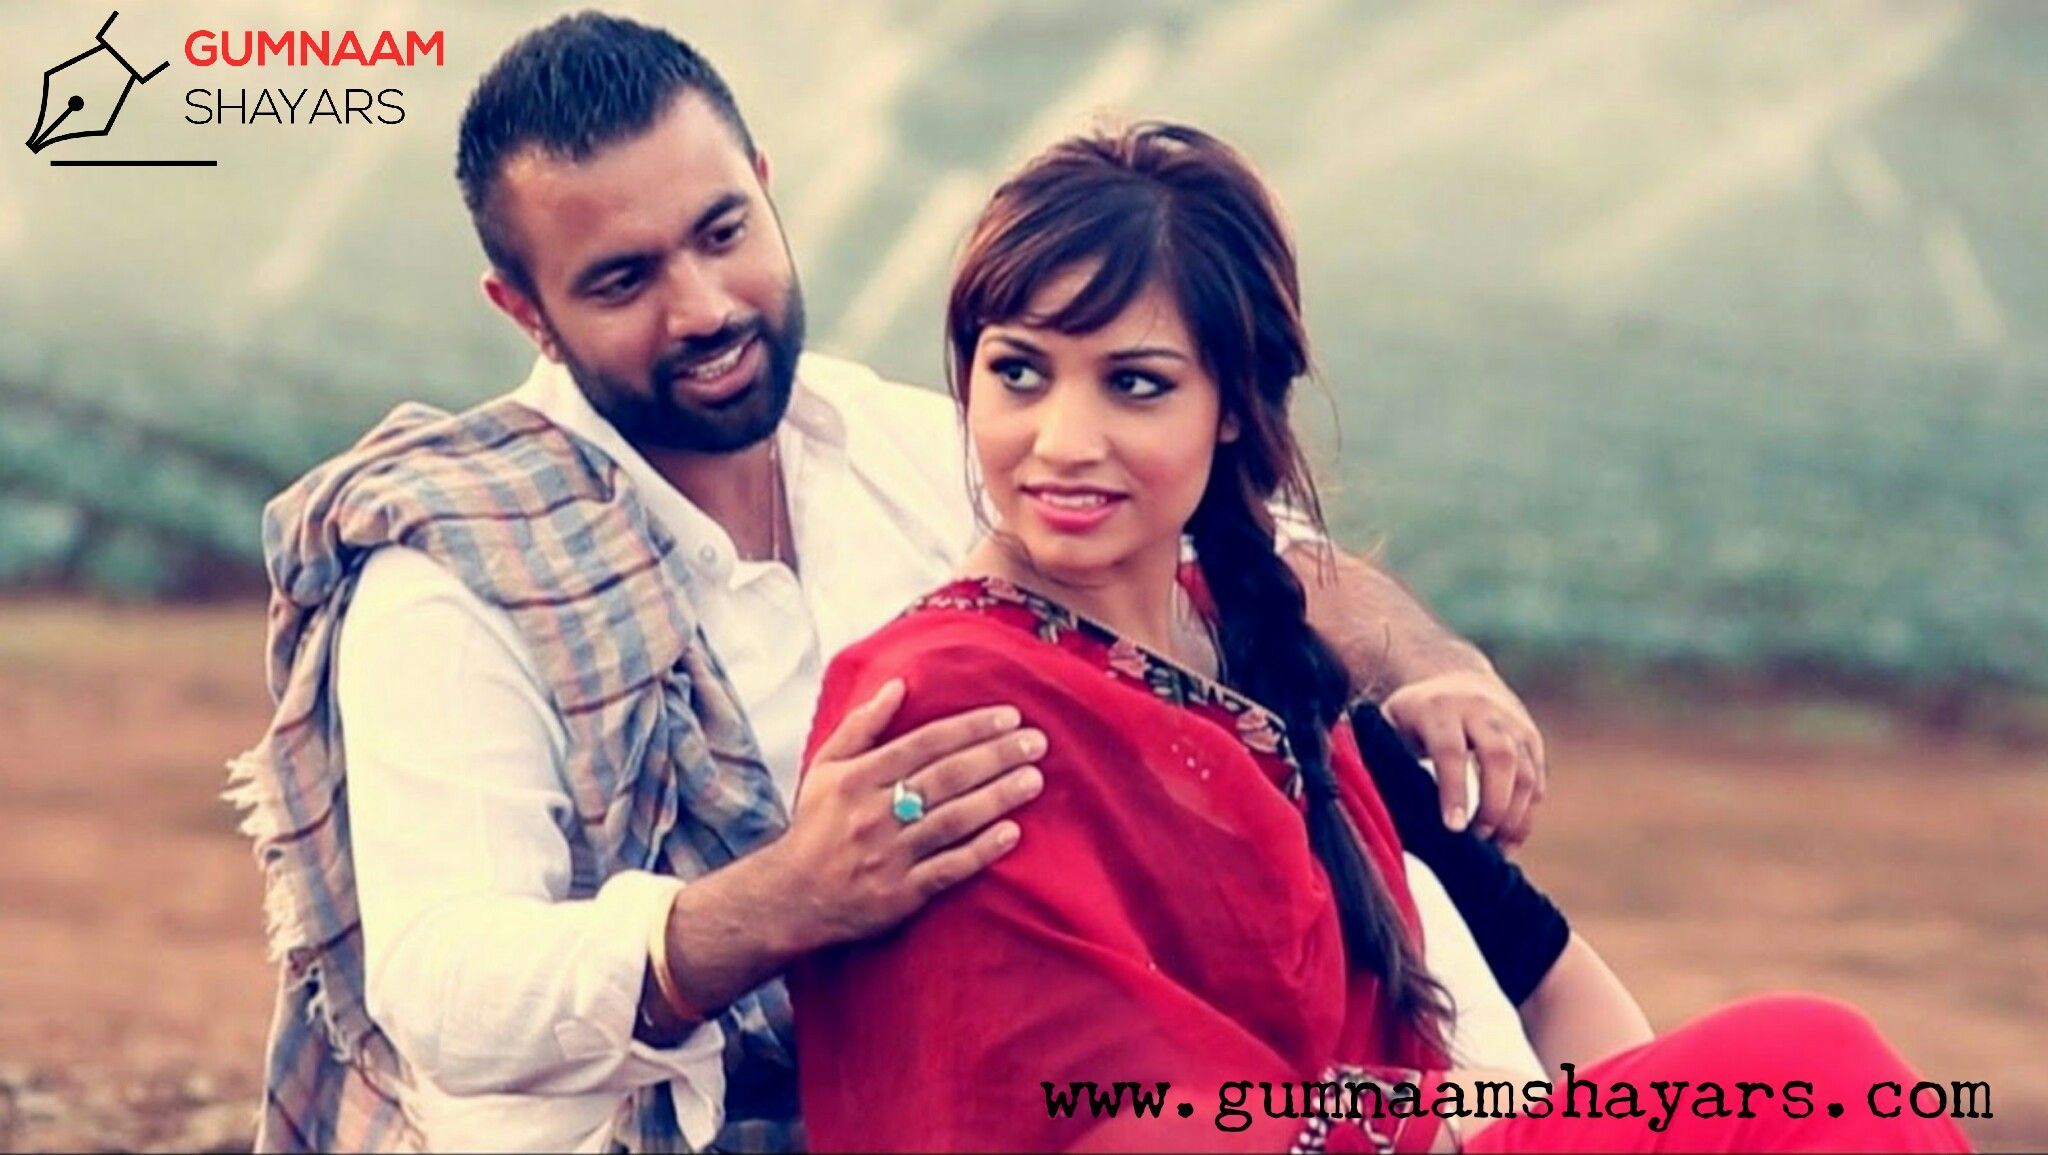 Punjabi Couple. Love couple image, Couples image